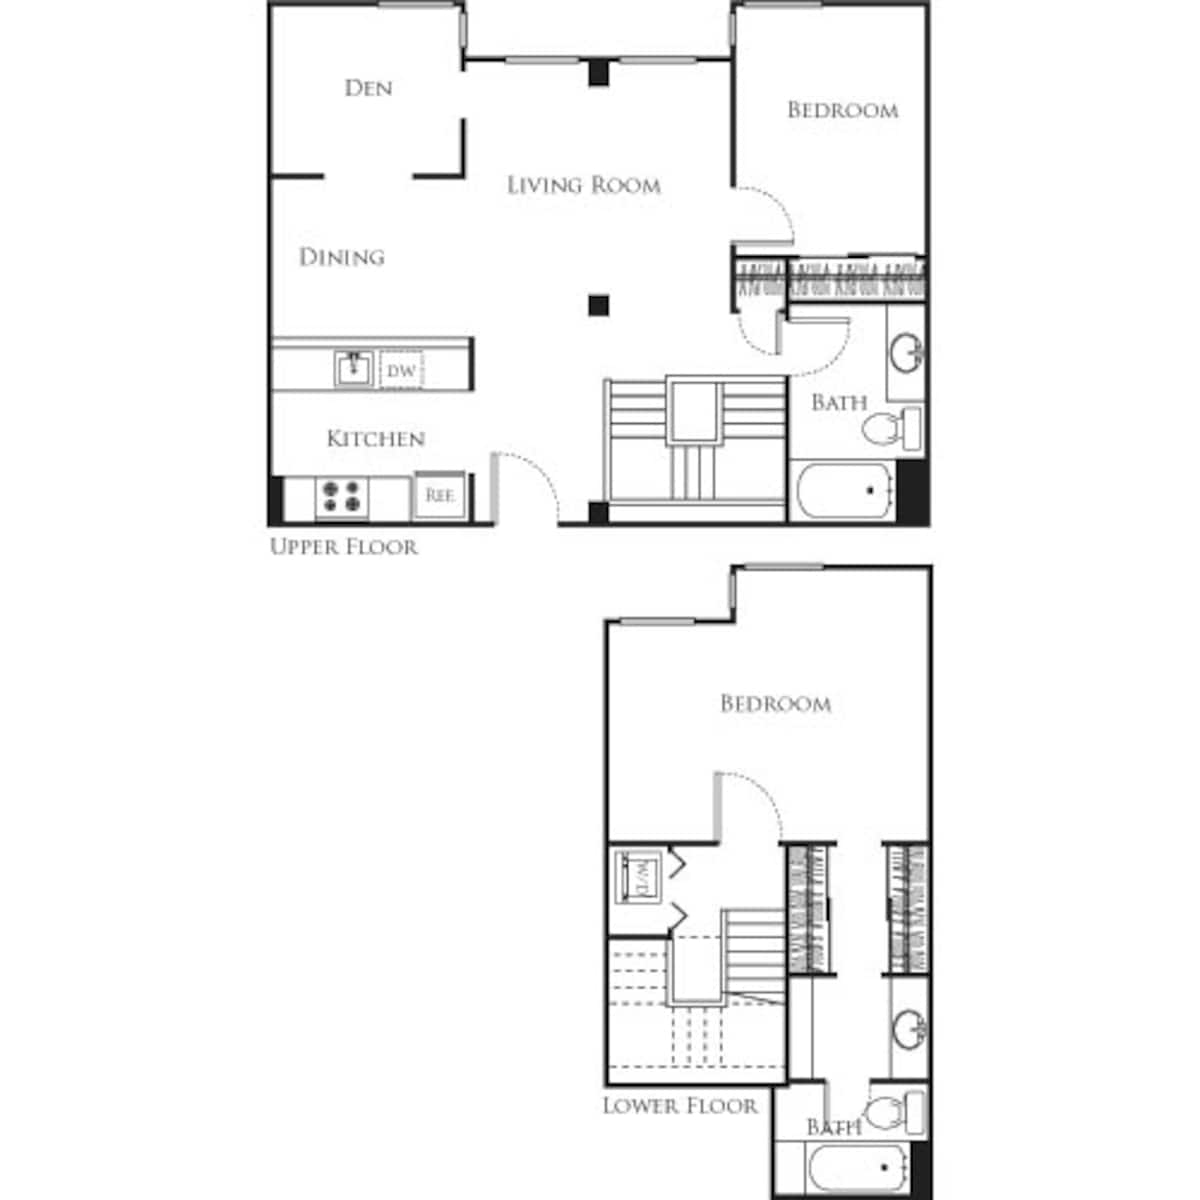 Floorplan diagram for Posh with den, showing 2 bedroom